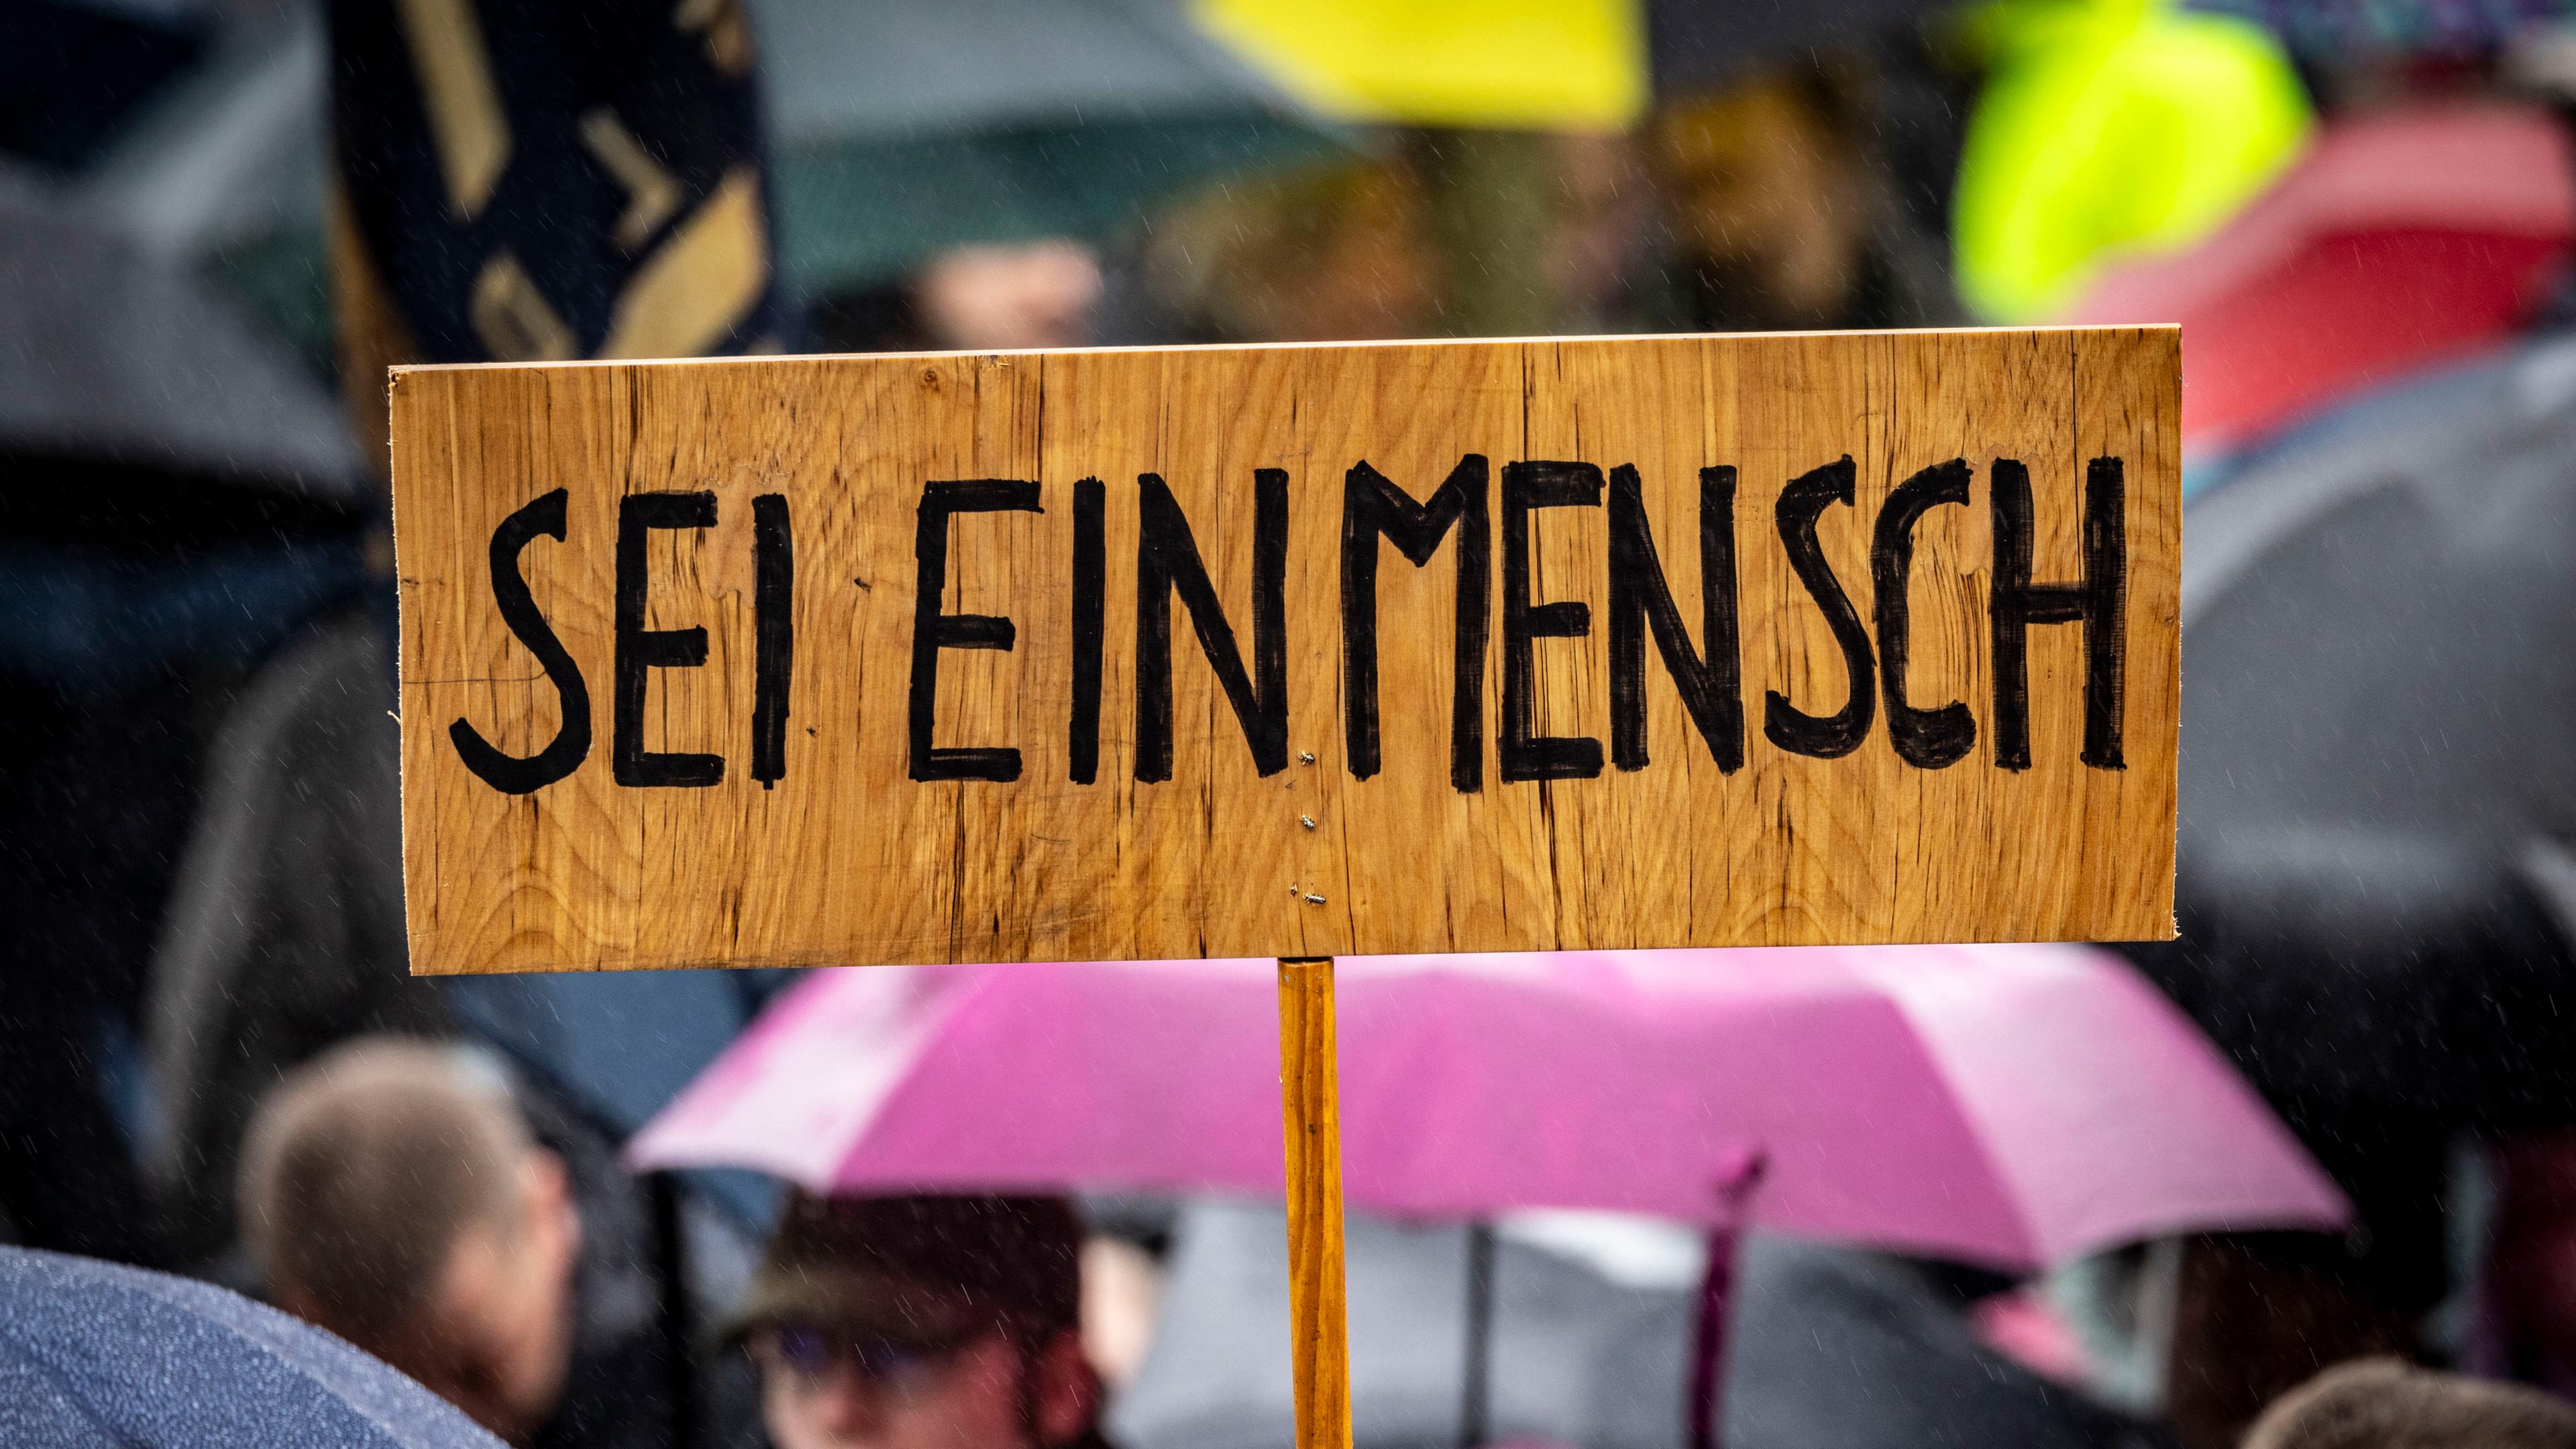  "Sei ein Mensch" steht auf einem Schild während einer Demonstration gegen Rechtsextremismus.